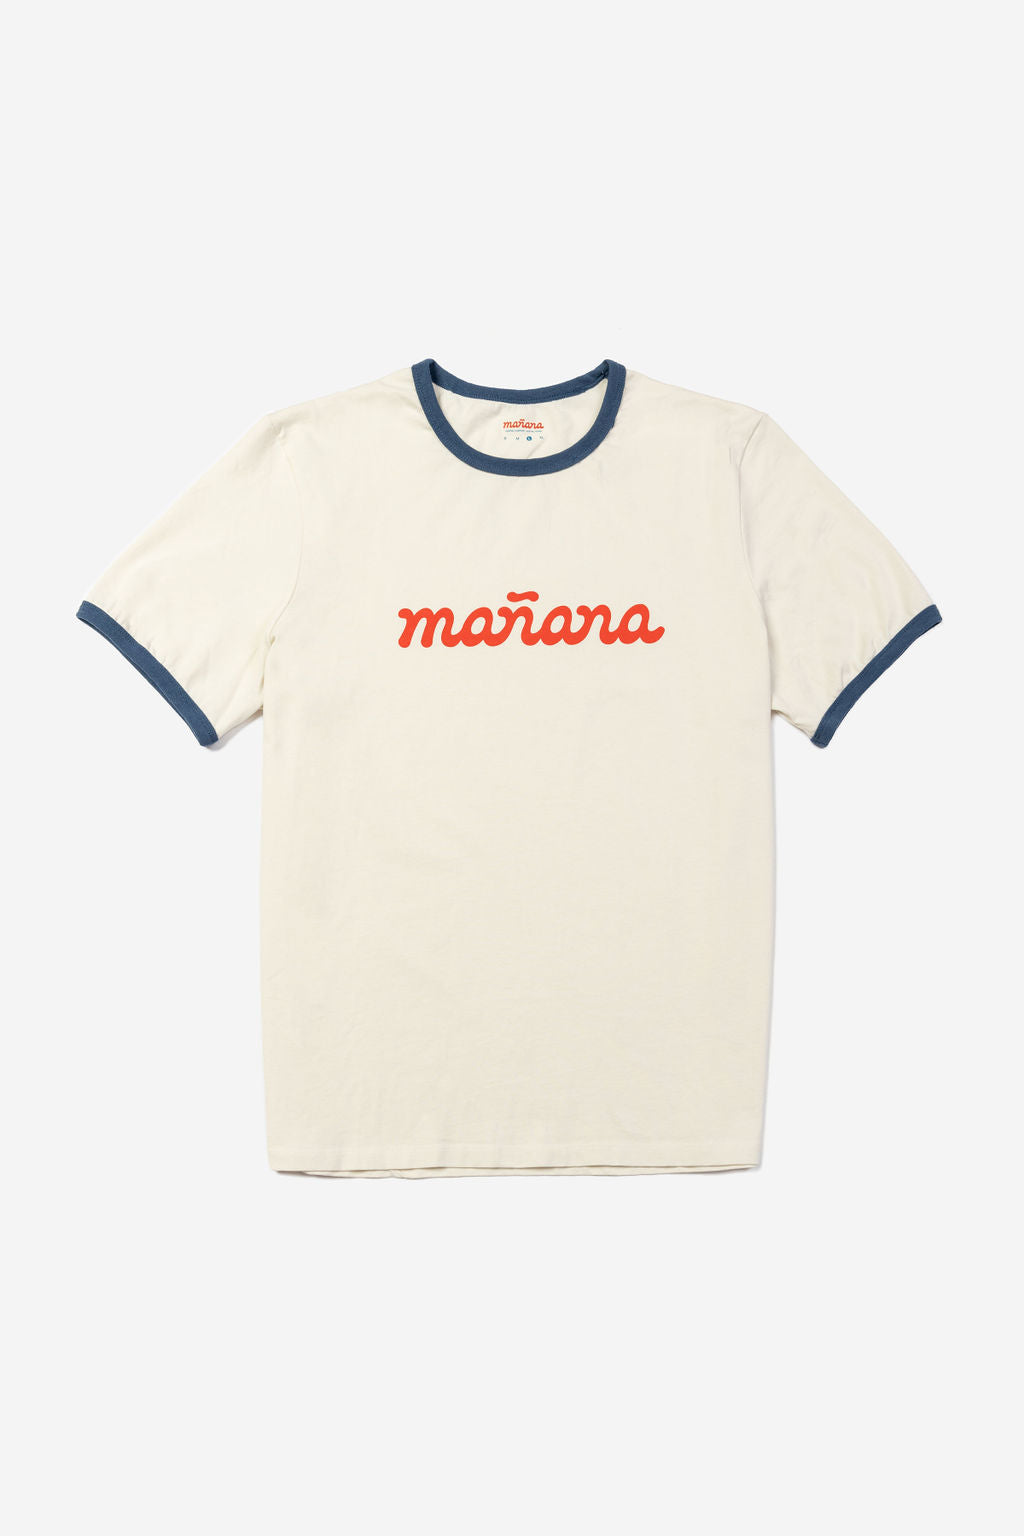 Off white tee shirt with Manana branding